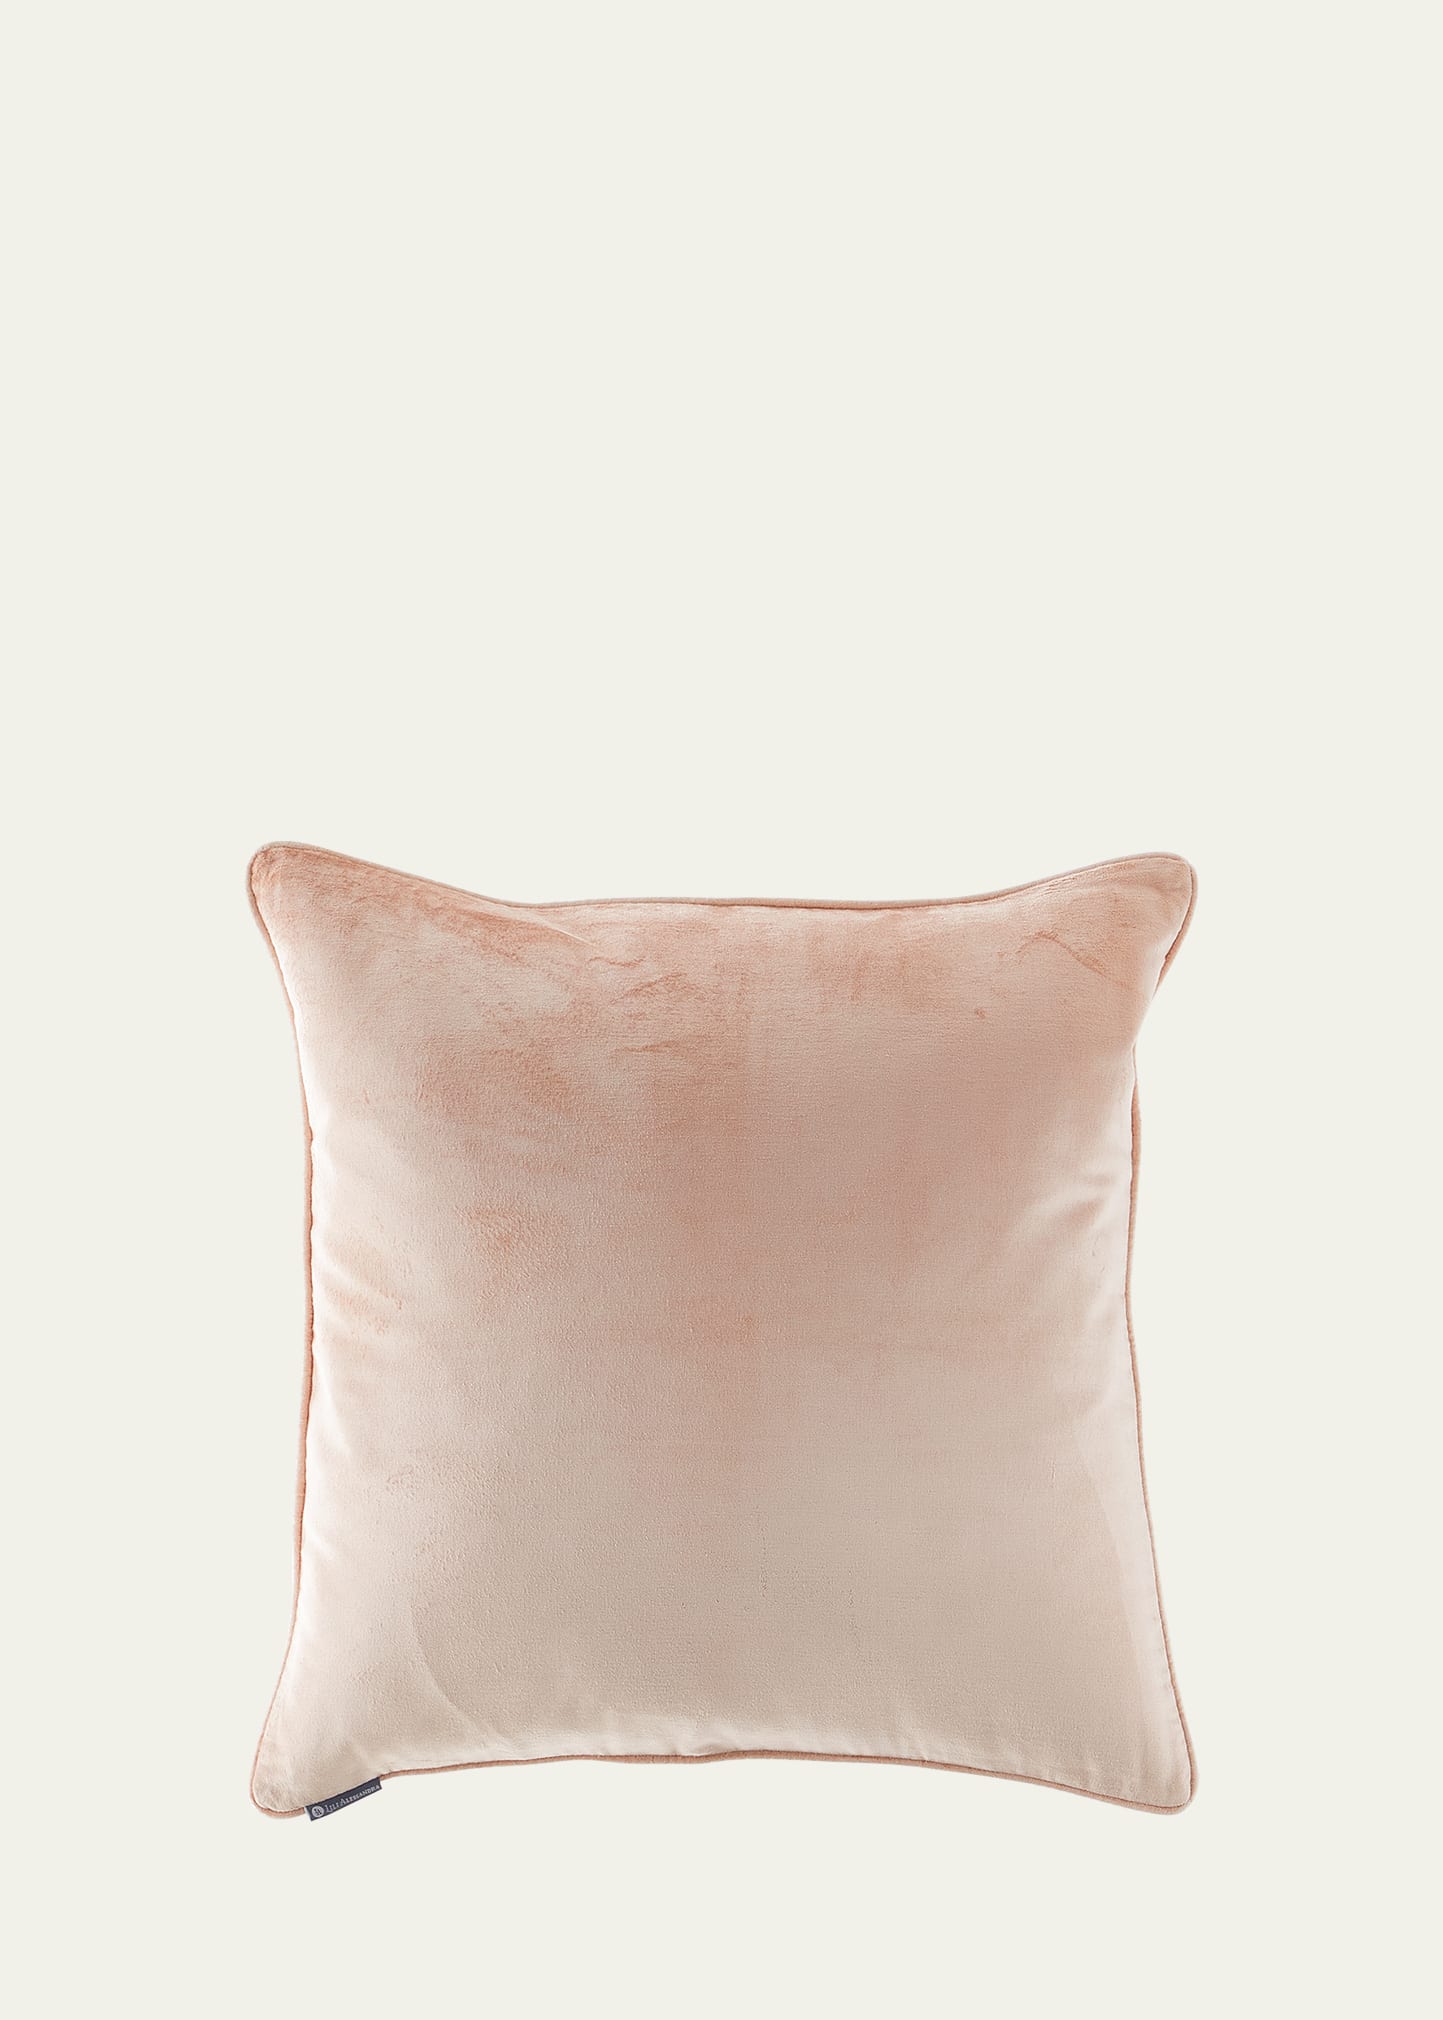 Cairo Velvet Pillow, 24"Sq.